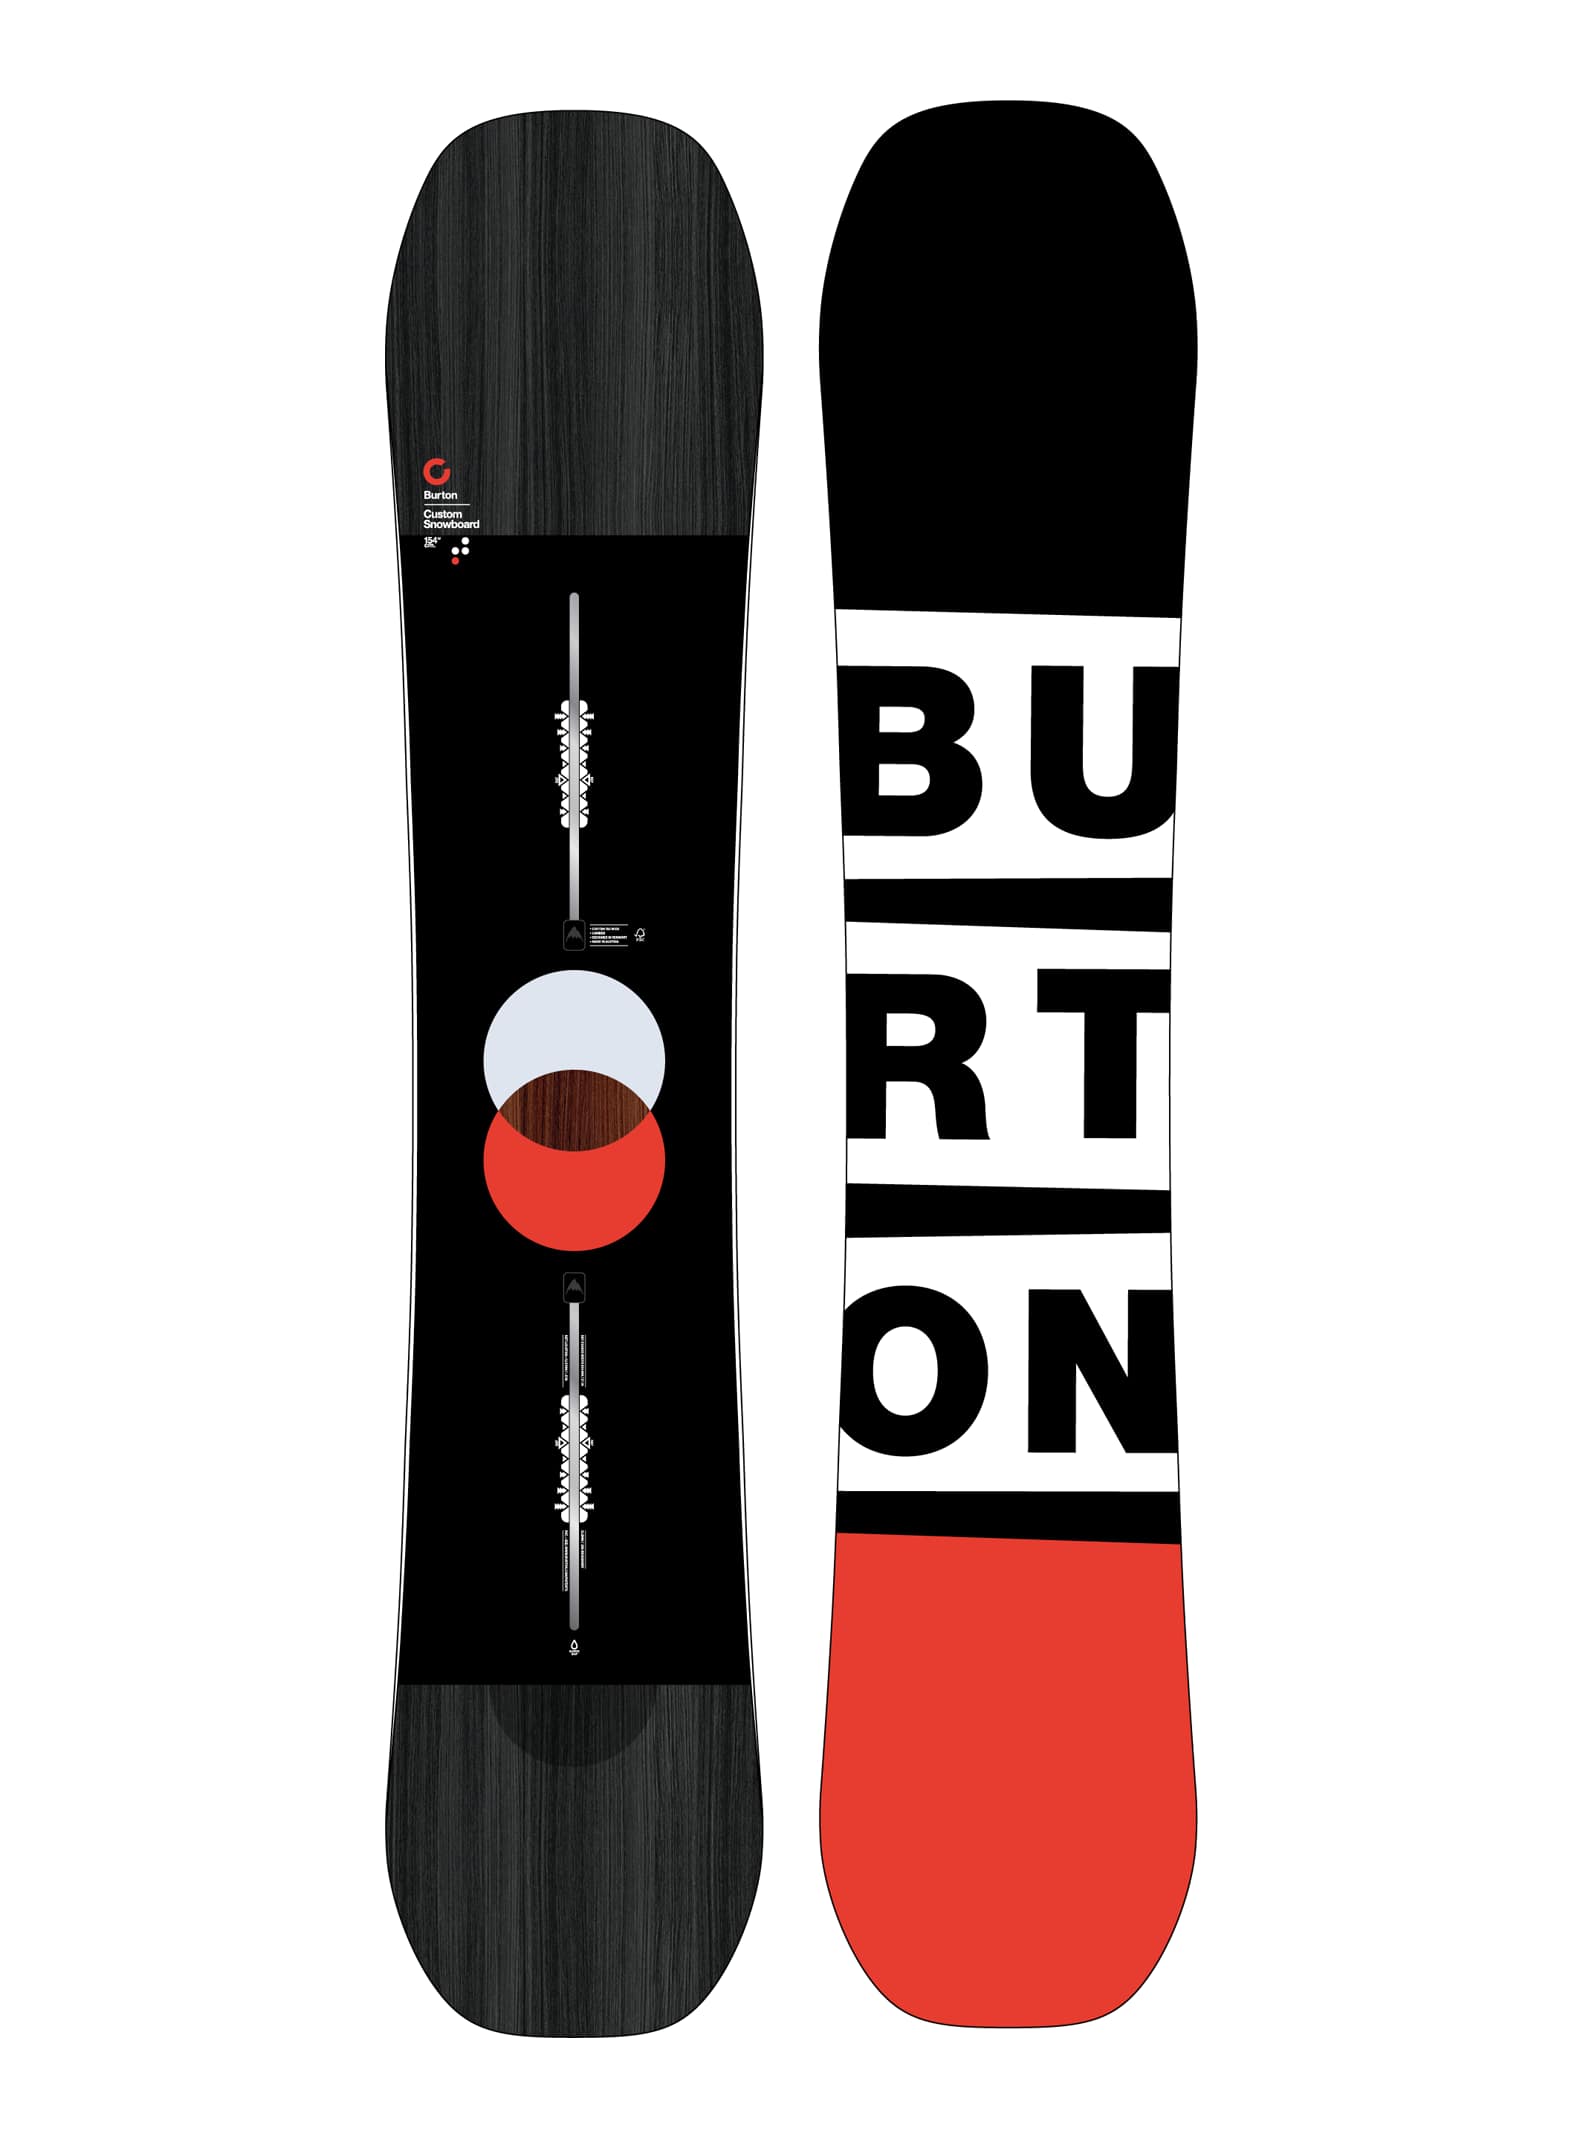 BURTON CUSTOM 154 × BURTON CUSTOM M